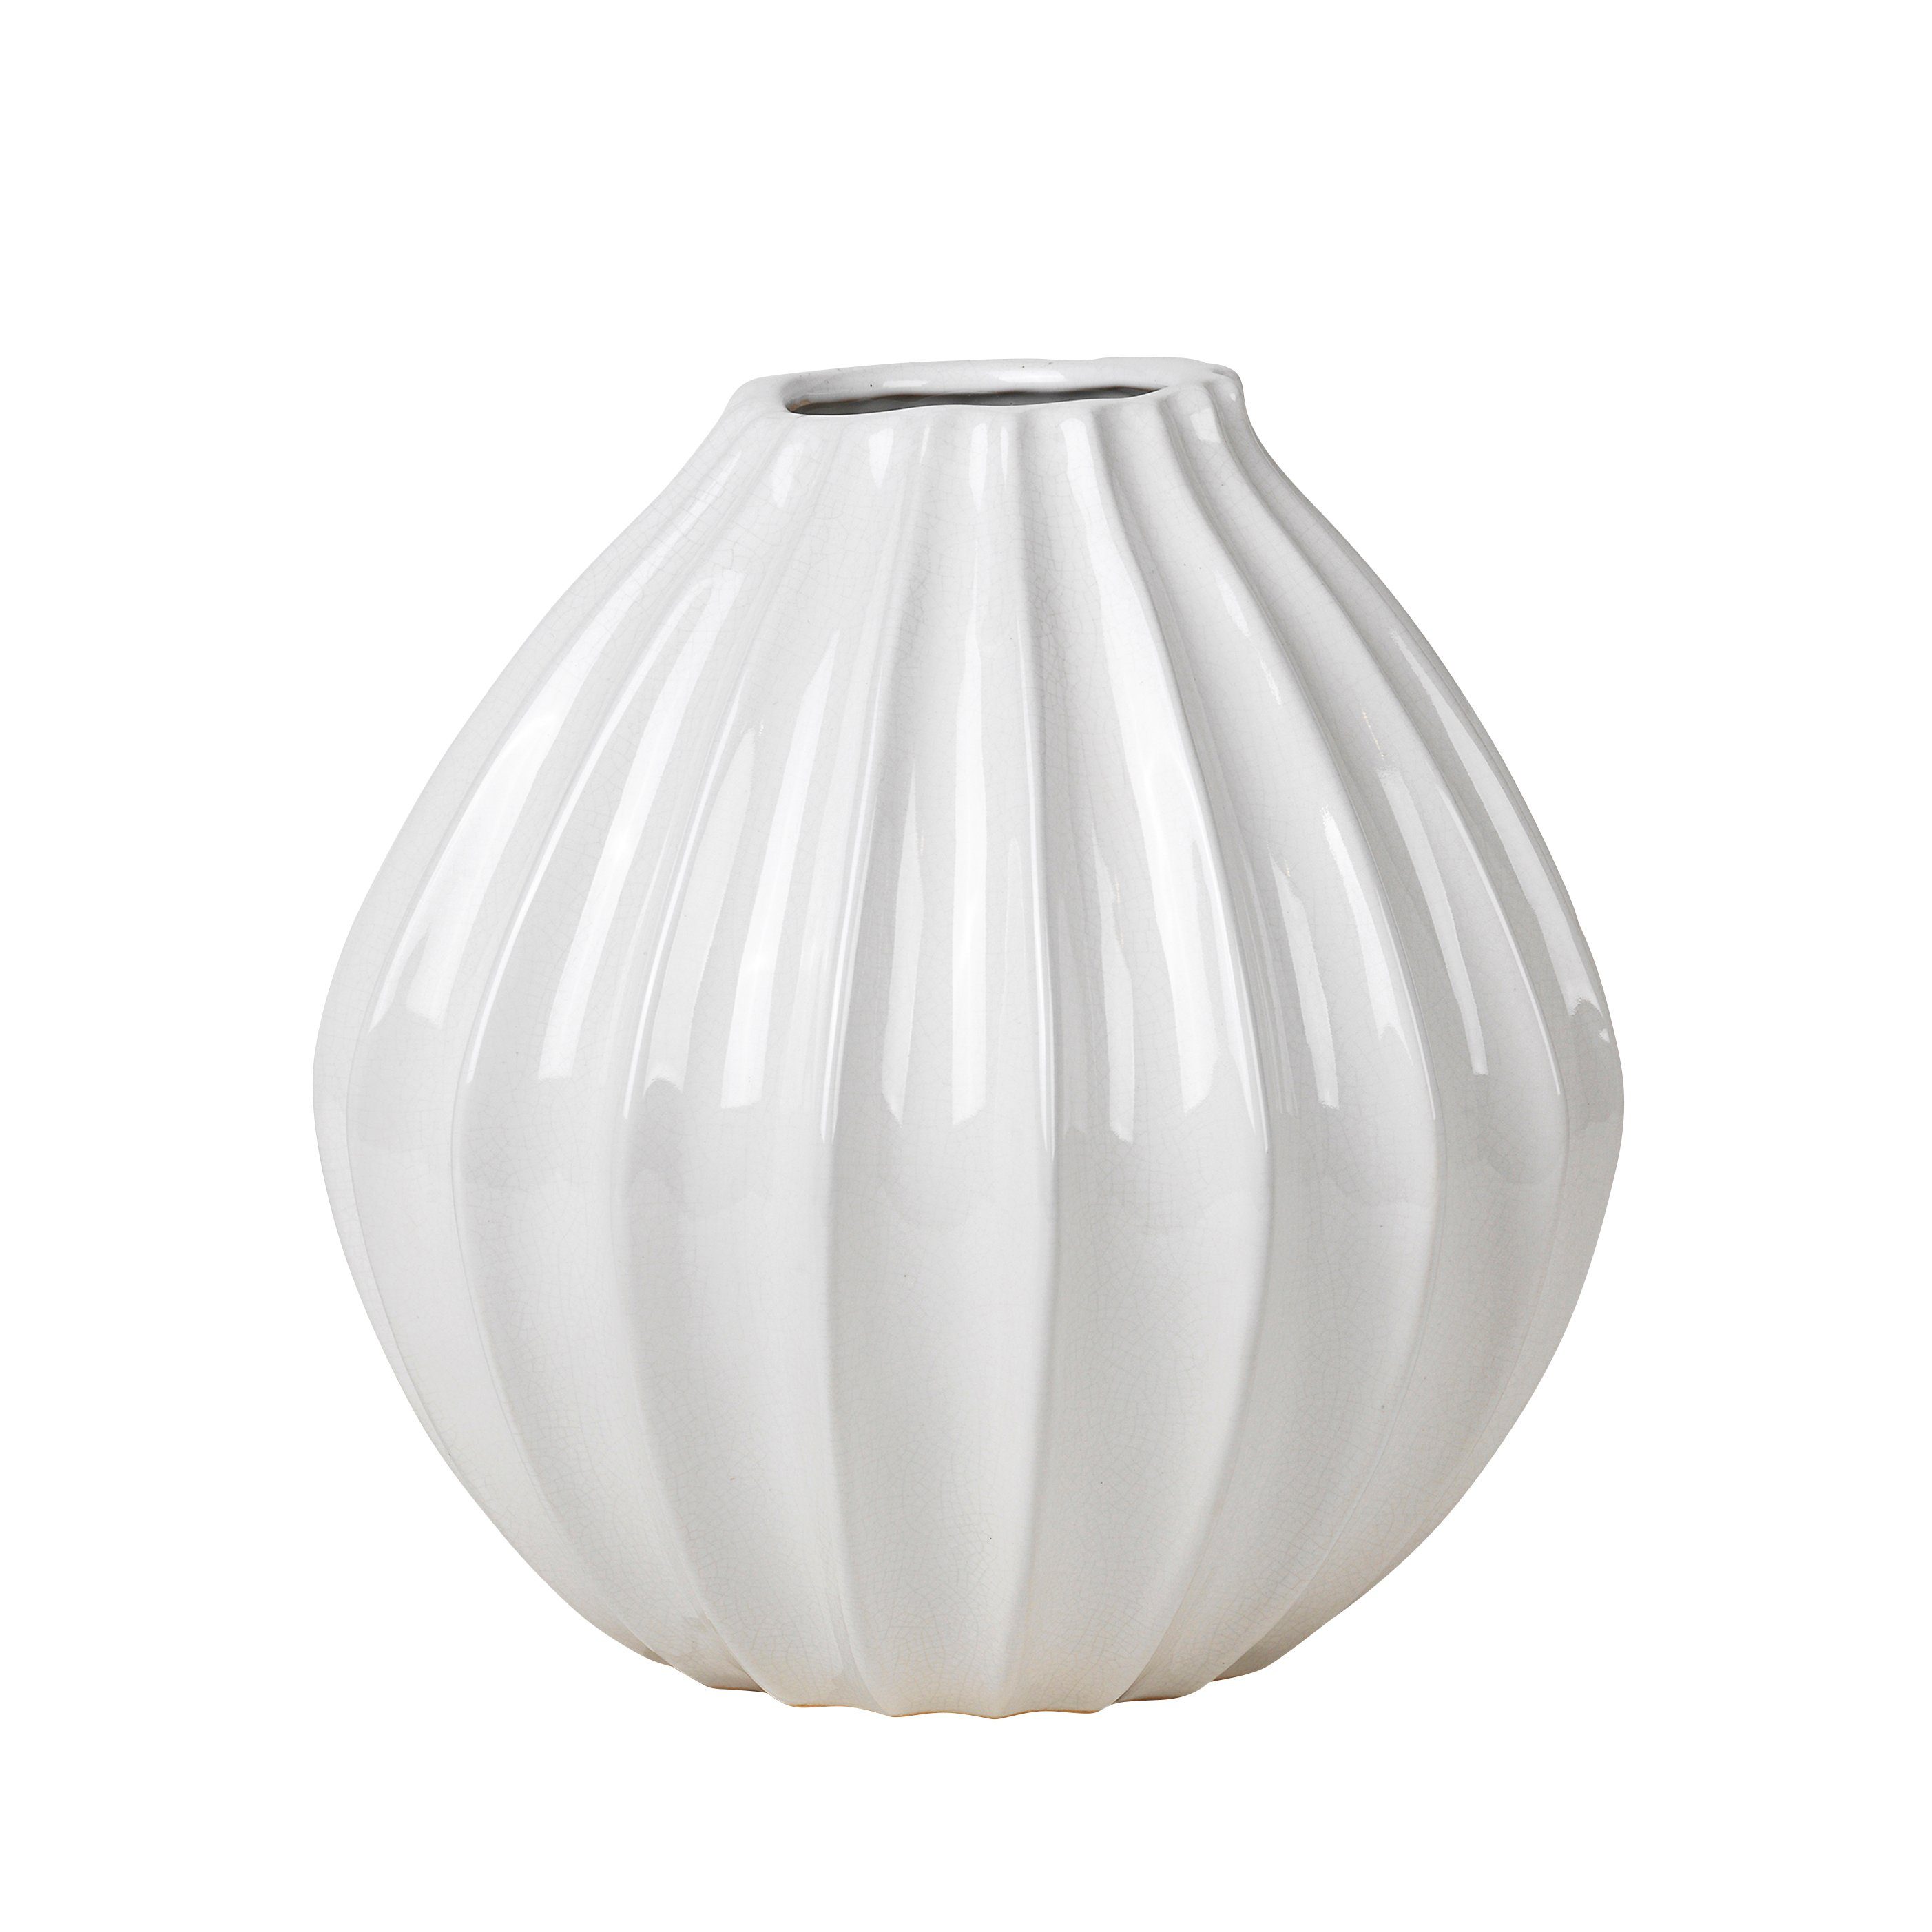 White Vase Copenhagen - Large "WIDE" Broste Broste Dekovase